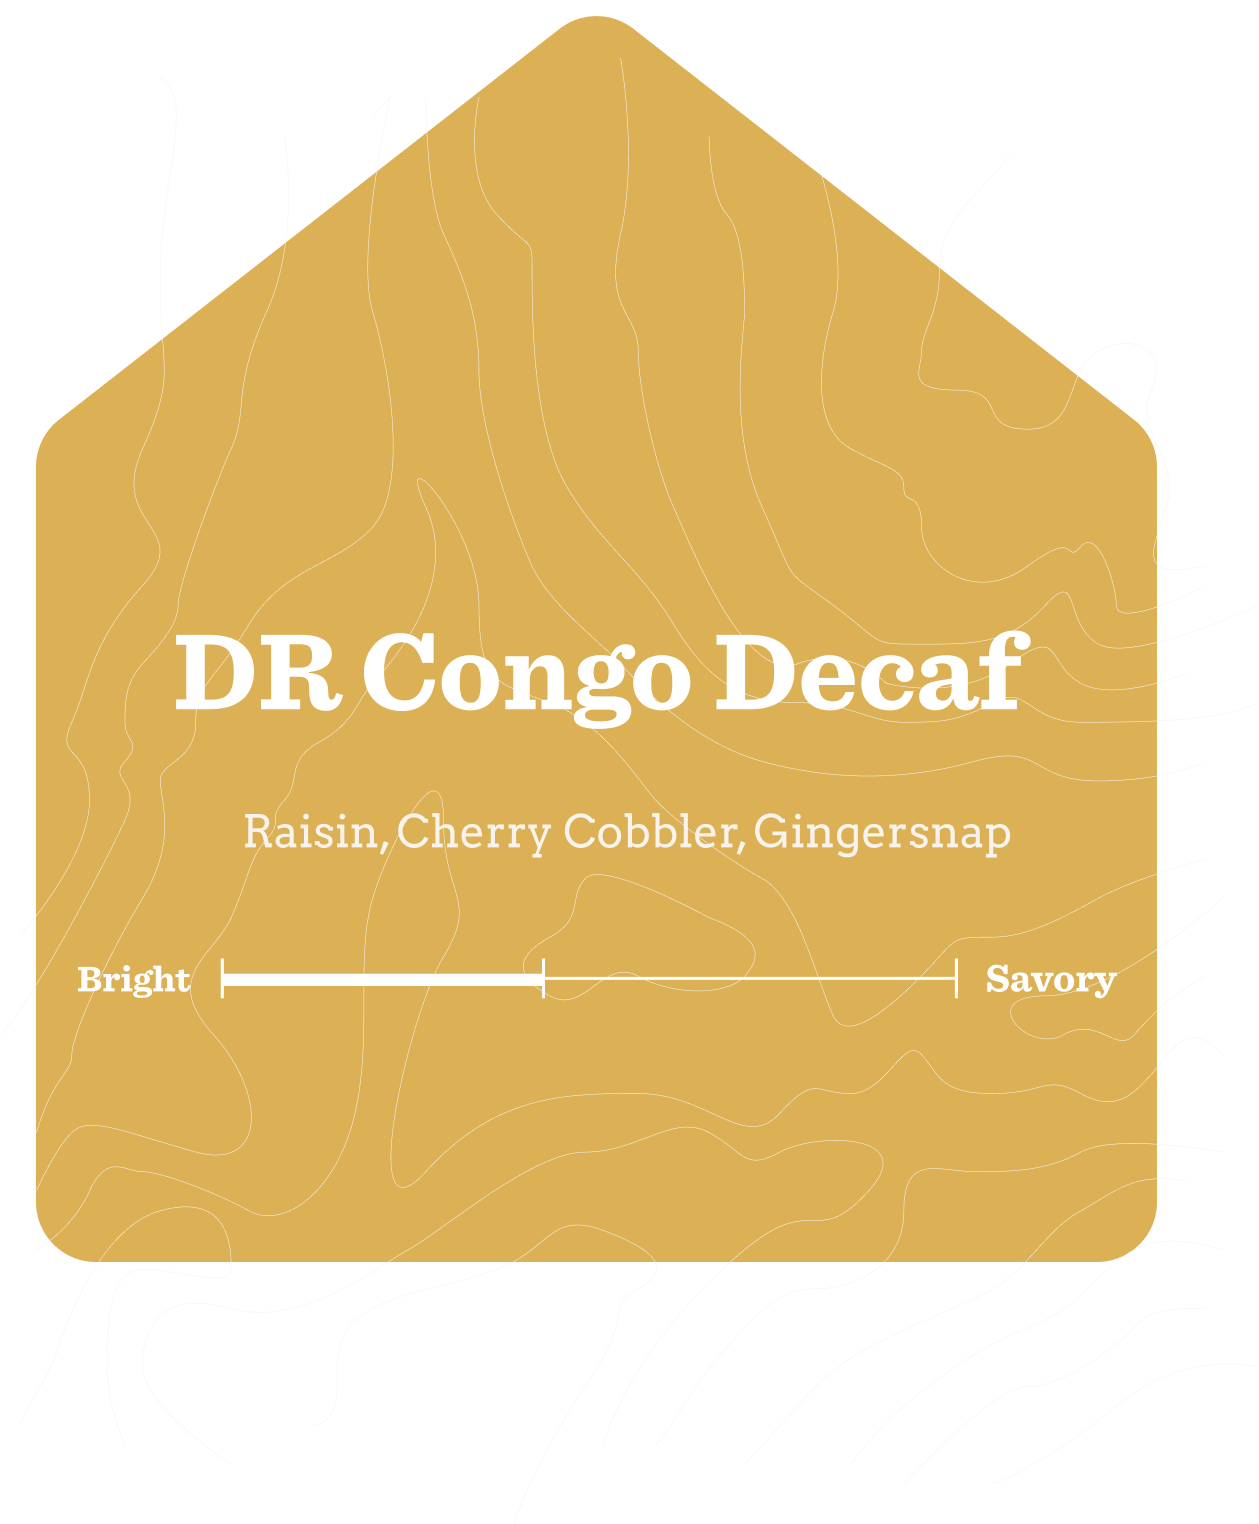 Decaf - DR Congo